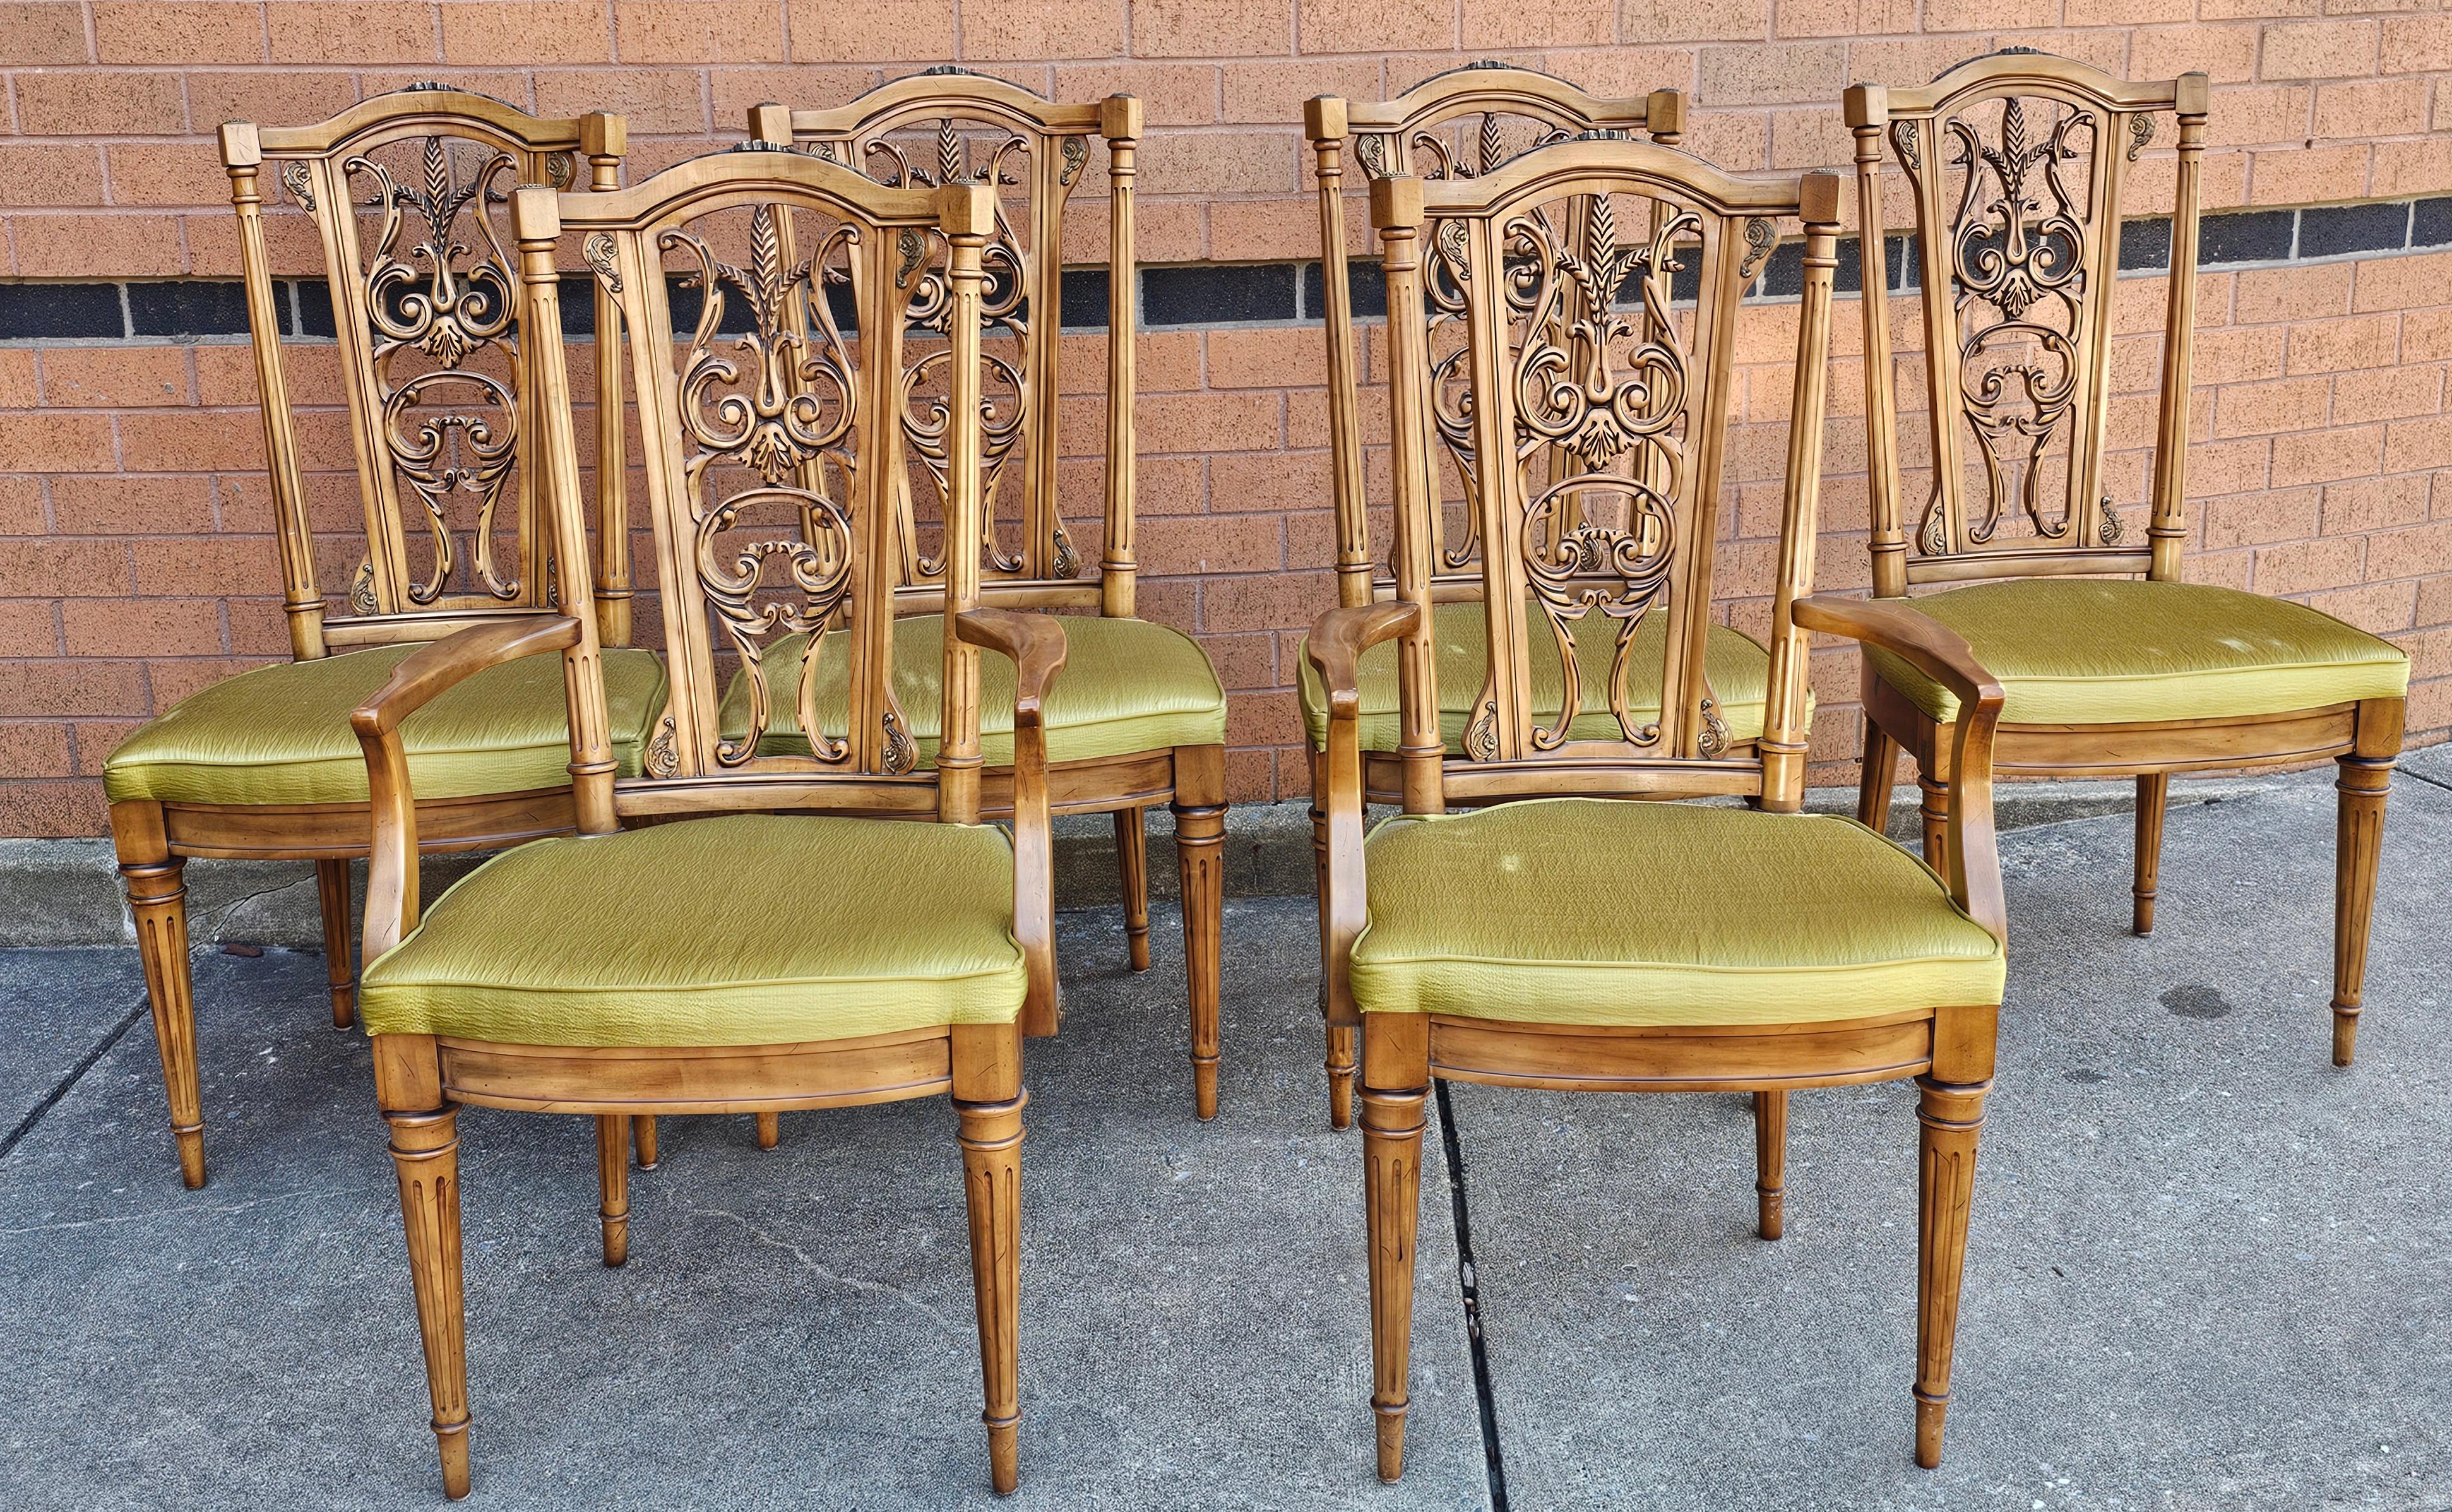 Ensemble de six chaises de salle à manger de style Louis XVI en noyer français, montées sur laiton. Quatre fauteuils latéraux et deux fauteuils capitaine. Mesure 20,5